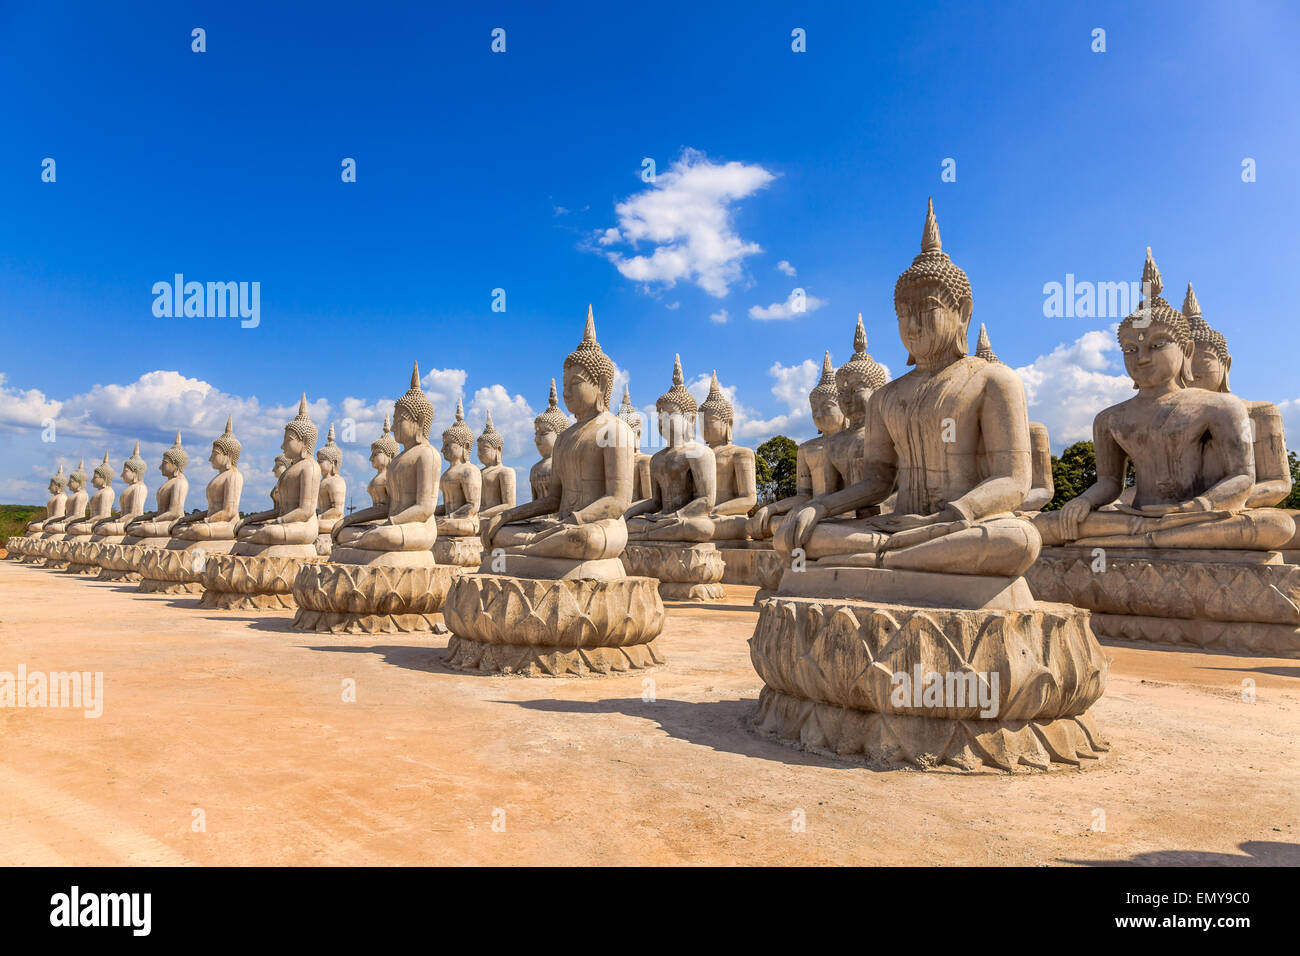 Ligne de statue de Bouddha dans le sud de la Thaïlande Banque D'Images